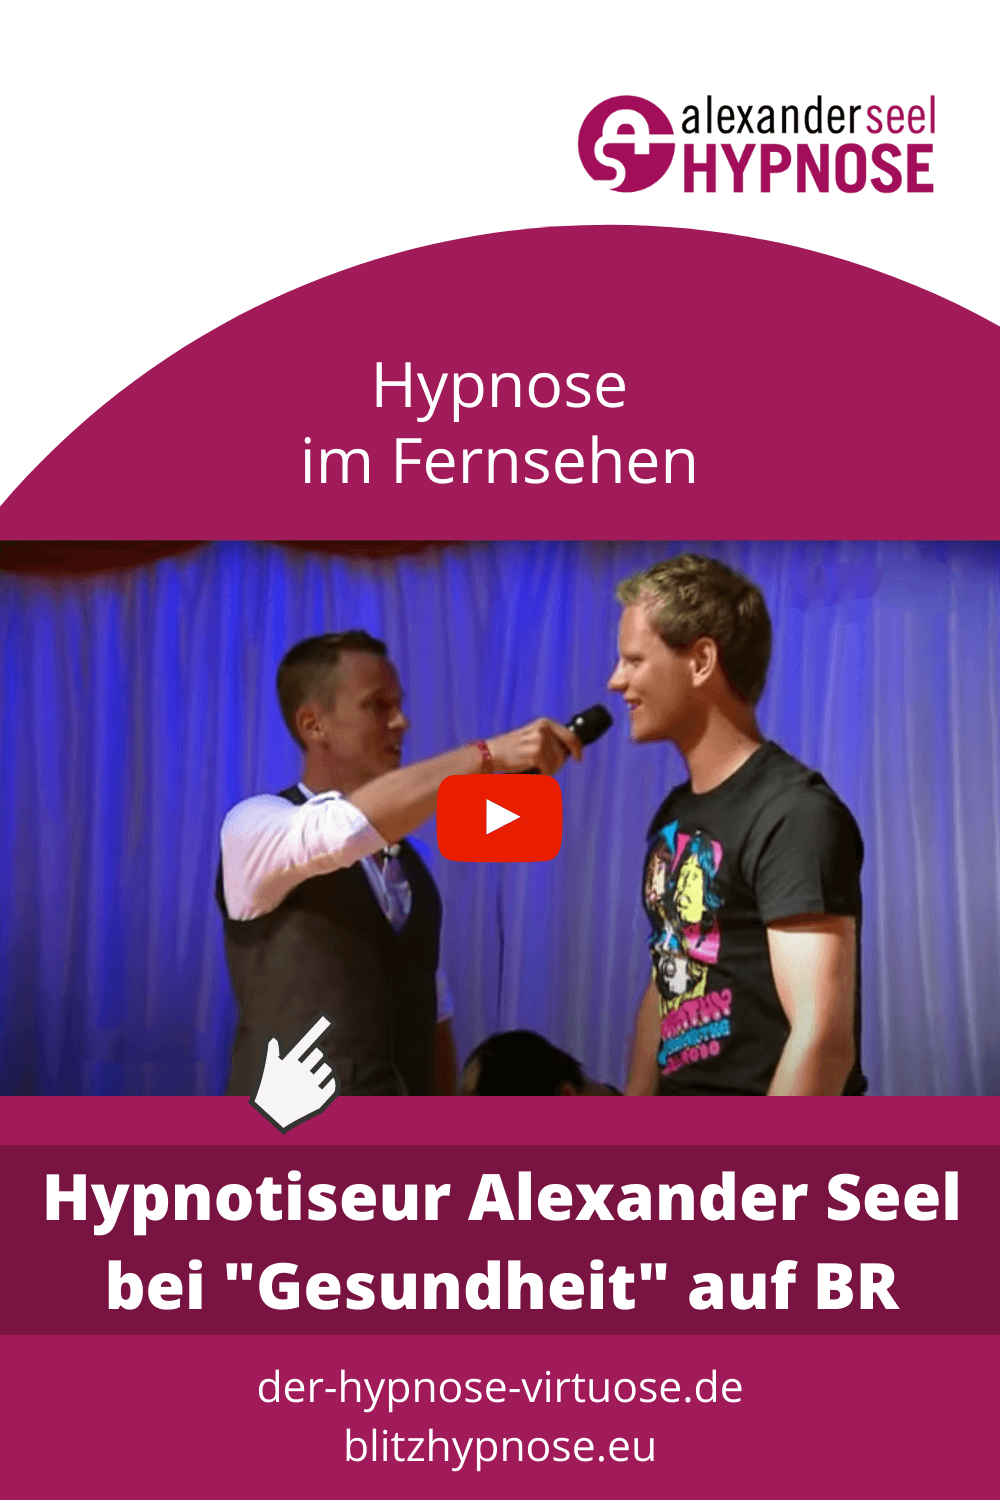 Showhypnose mit Alexander Seel im Fernsehen bei Gesundheit auf BR - Pinterest Pin